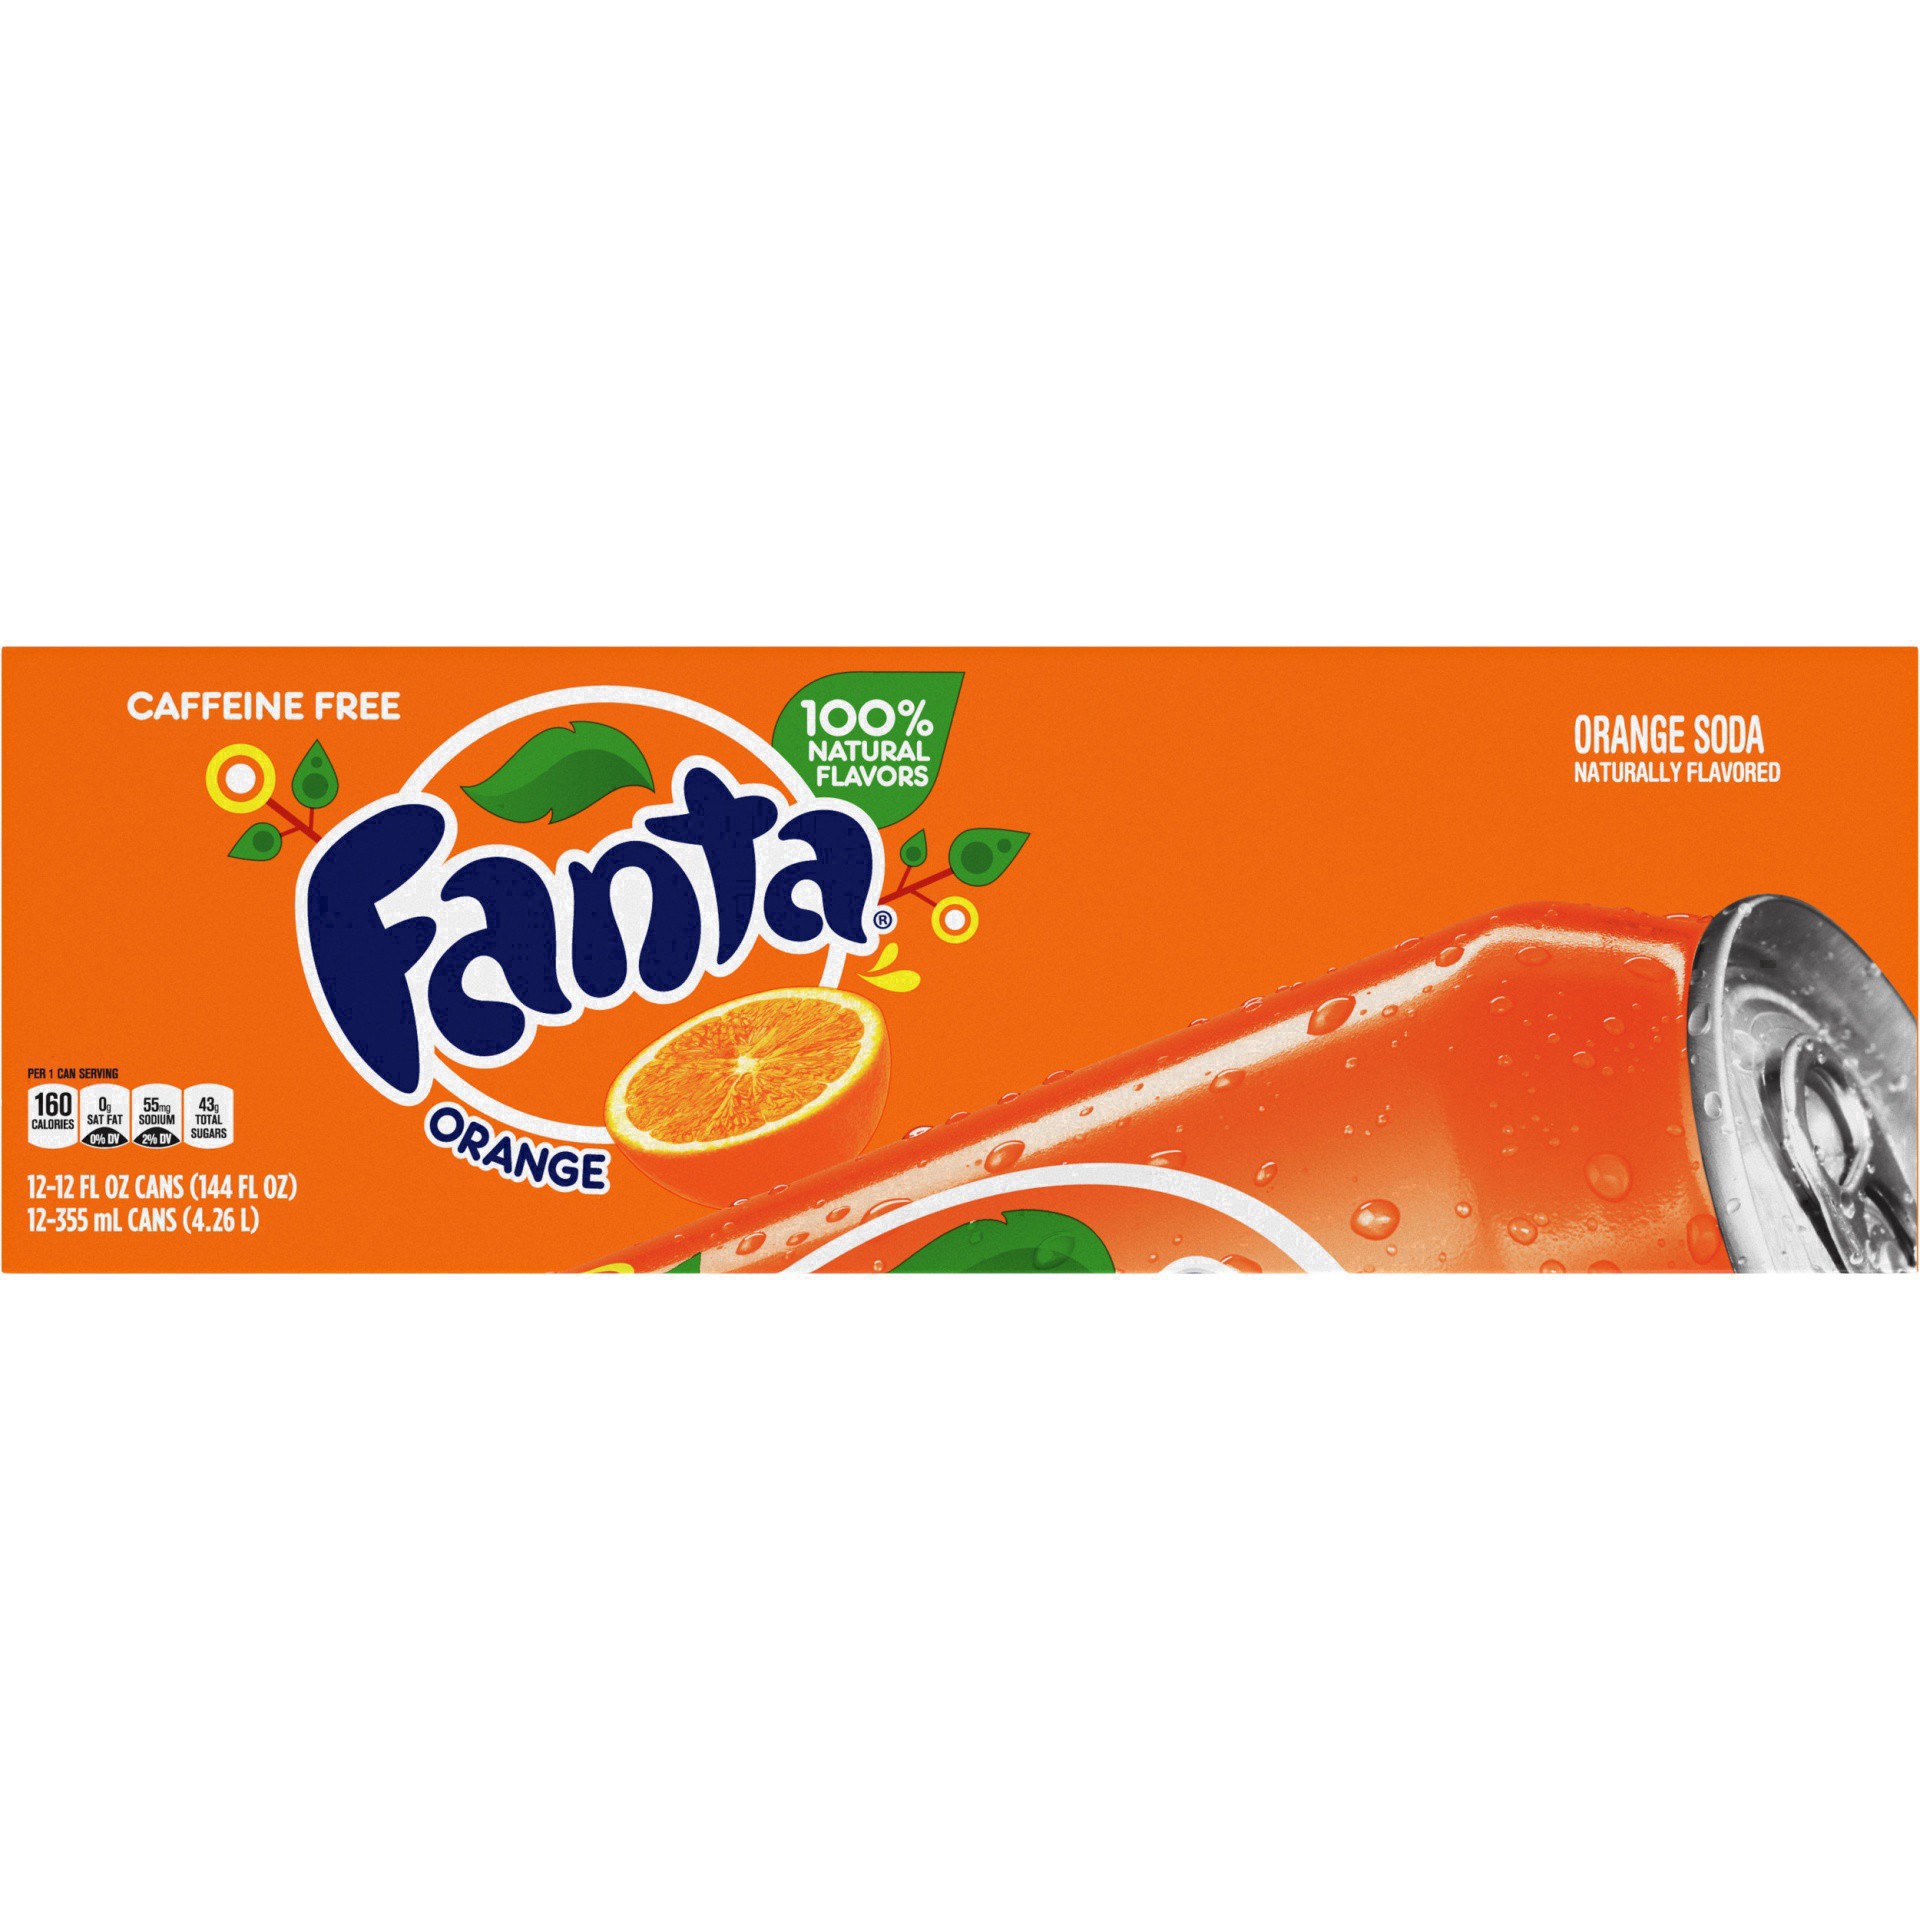 slide 12 of 95, Fanta Orange Soda Fridge Pack Cans, 12 fl oz, 12 Pack, 12 ct